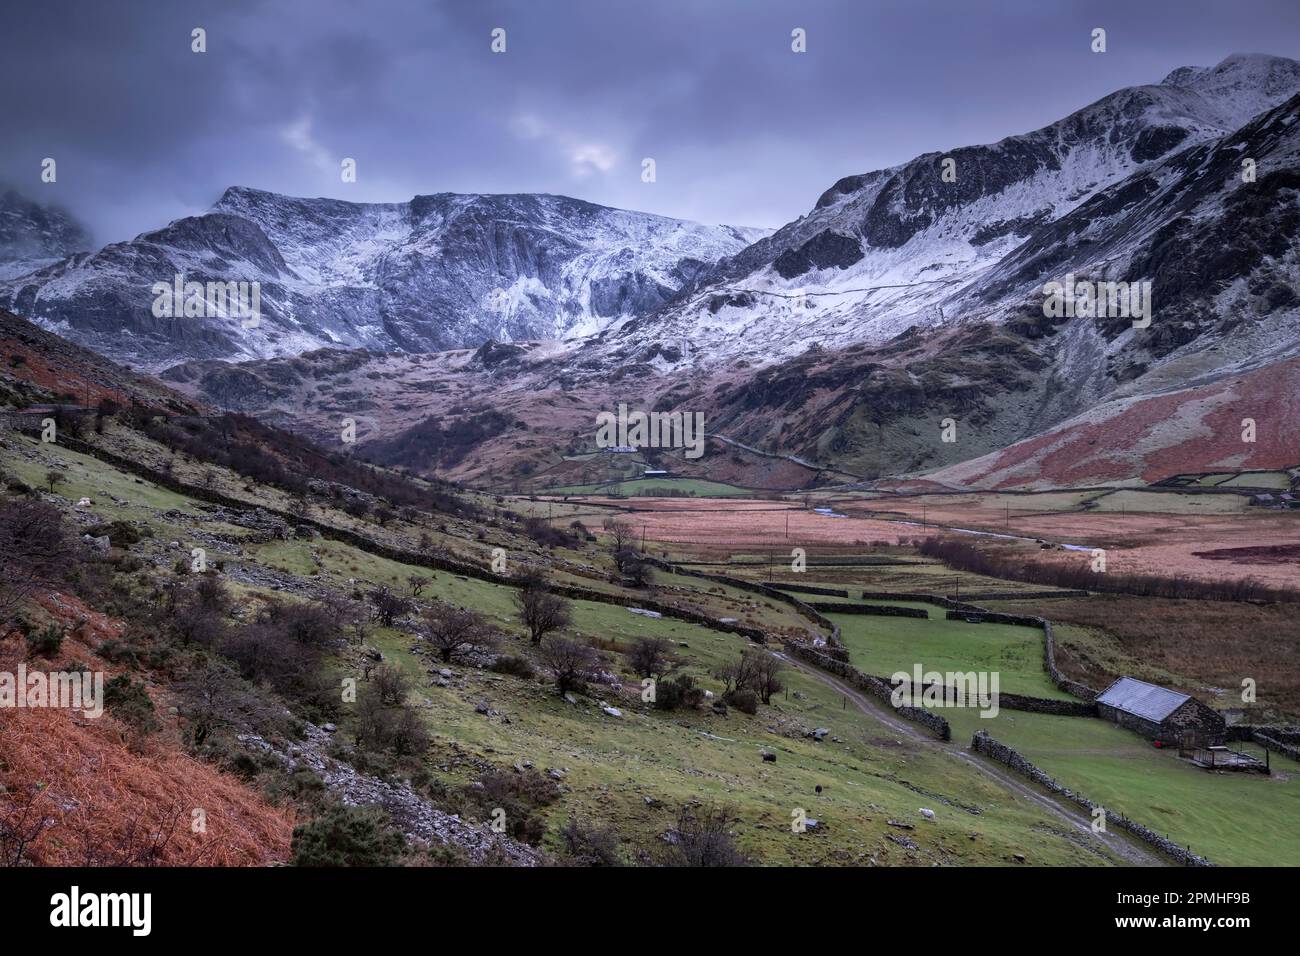 La vallée du Nant Ffrancon, soutenue par les montagnes de Glyderau en hiver, parc national de Snowdonia, Eryri, pays de Galles du Nord, Royaume-Uni, Europe Banque D'Images